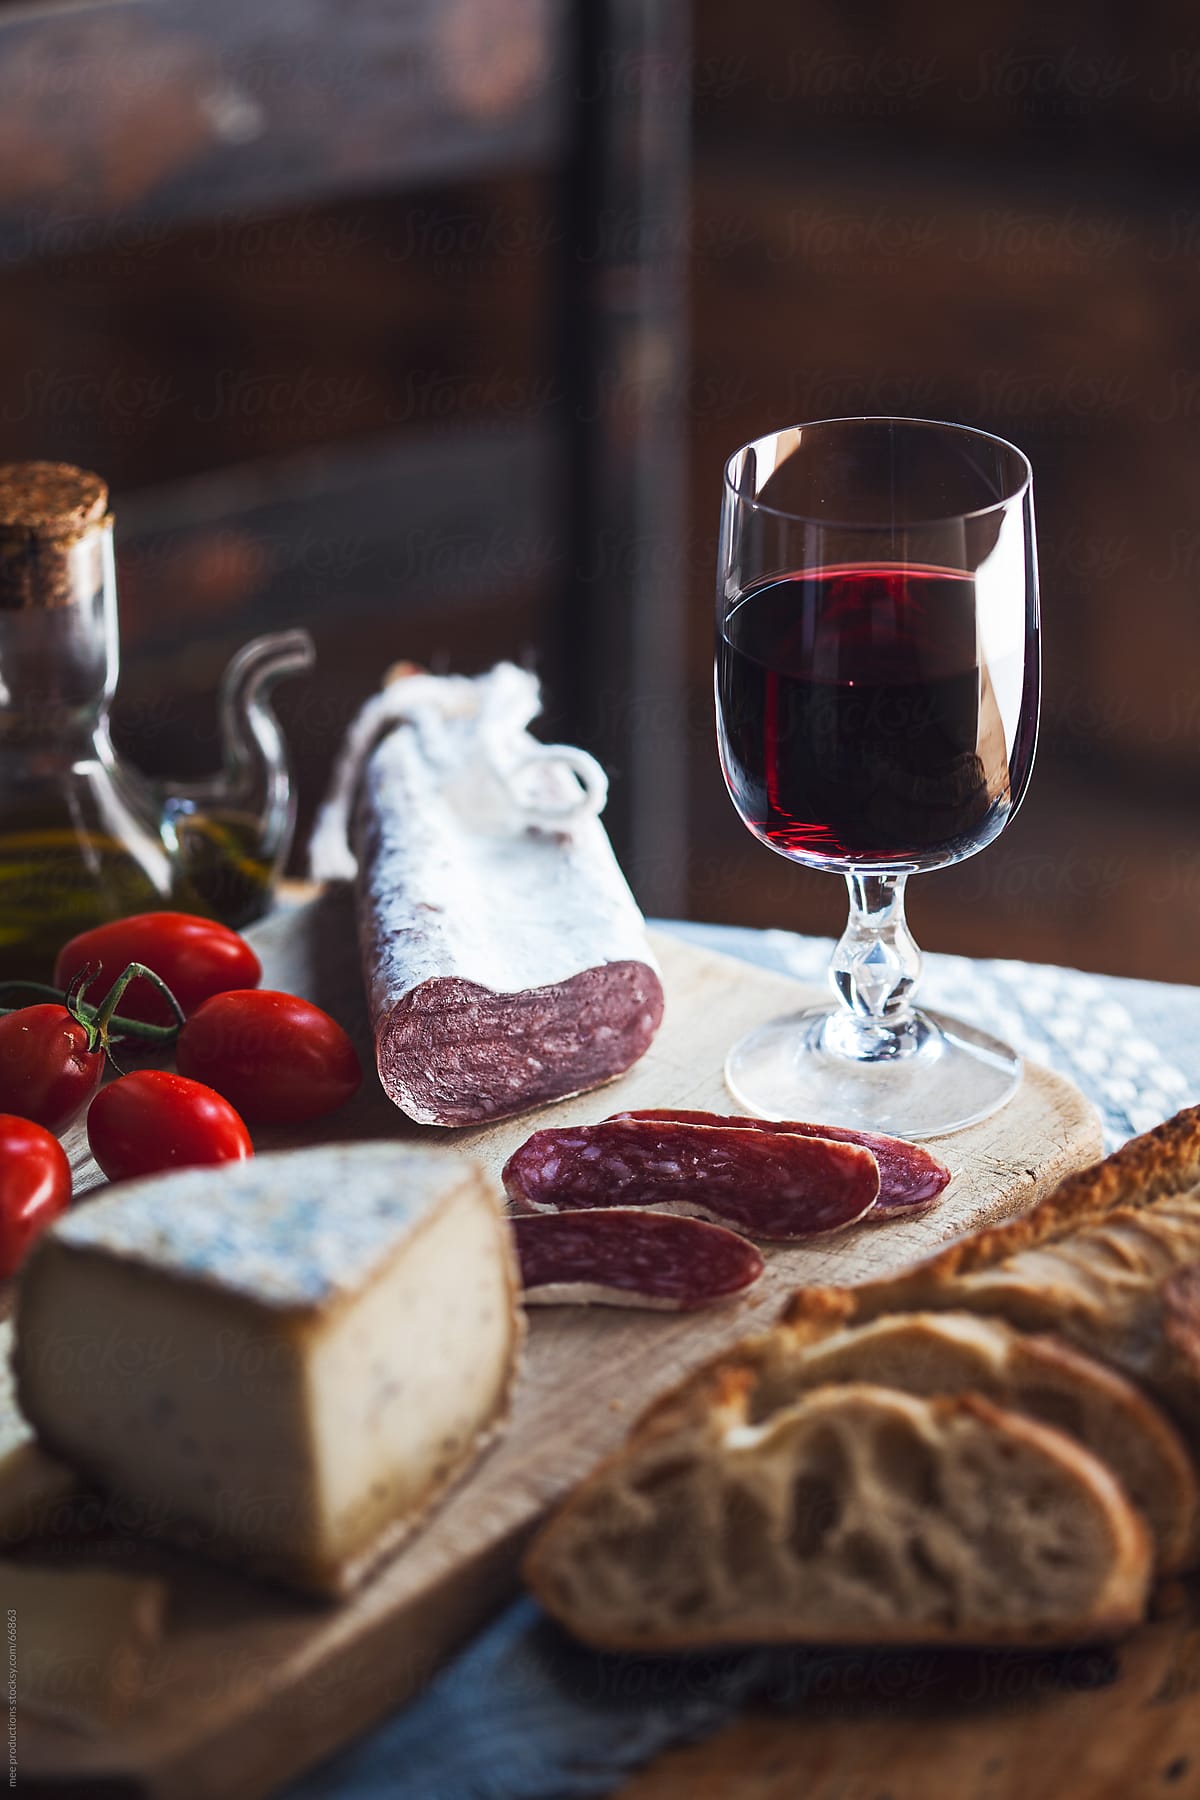 Mediterranean diet, sausage cheese and wine.